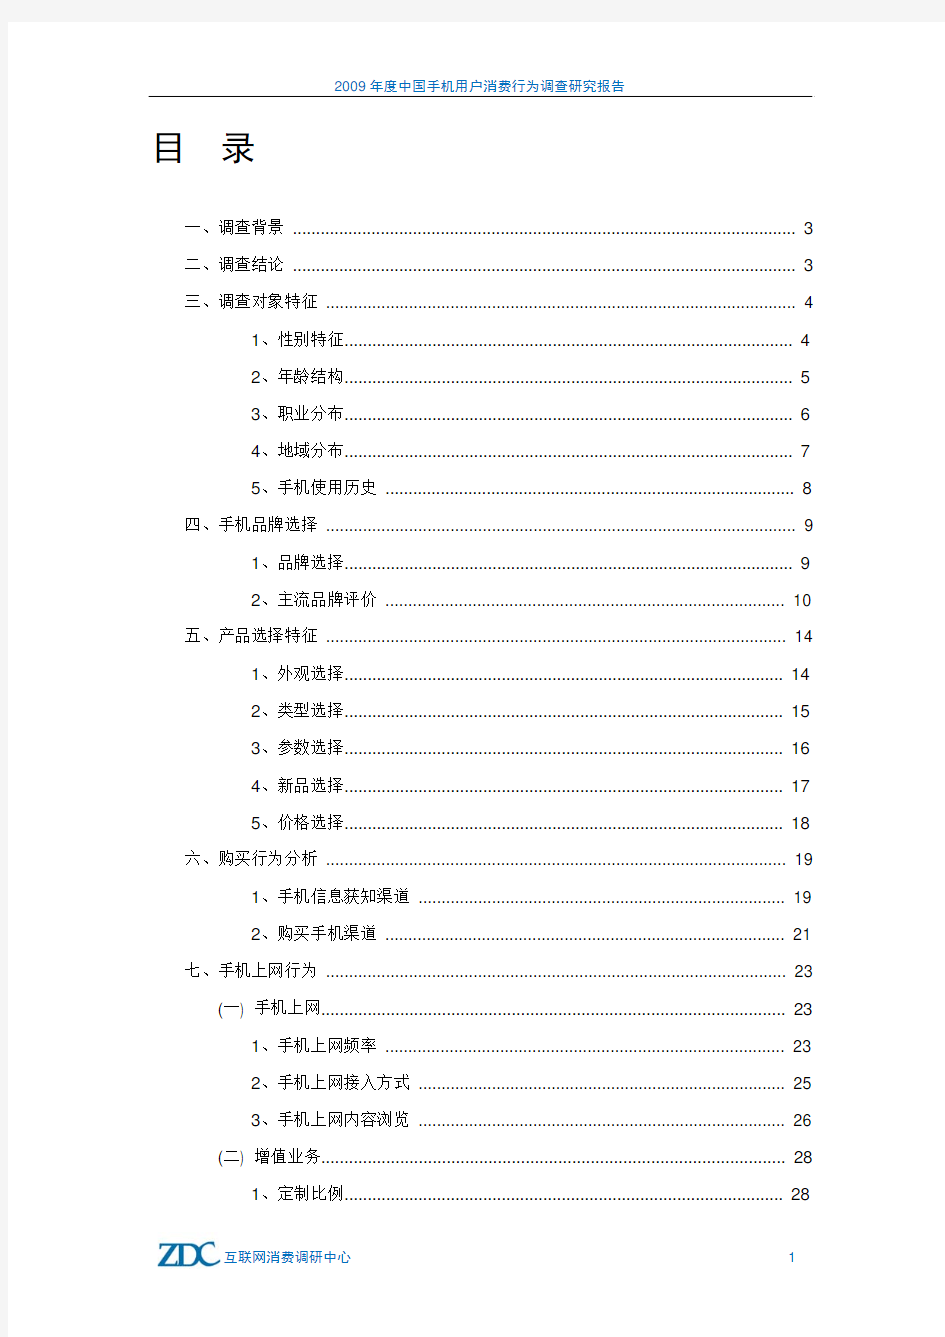 年度中国手机用户消费行为调查研究报告